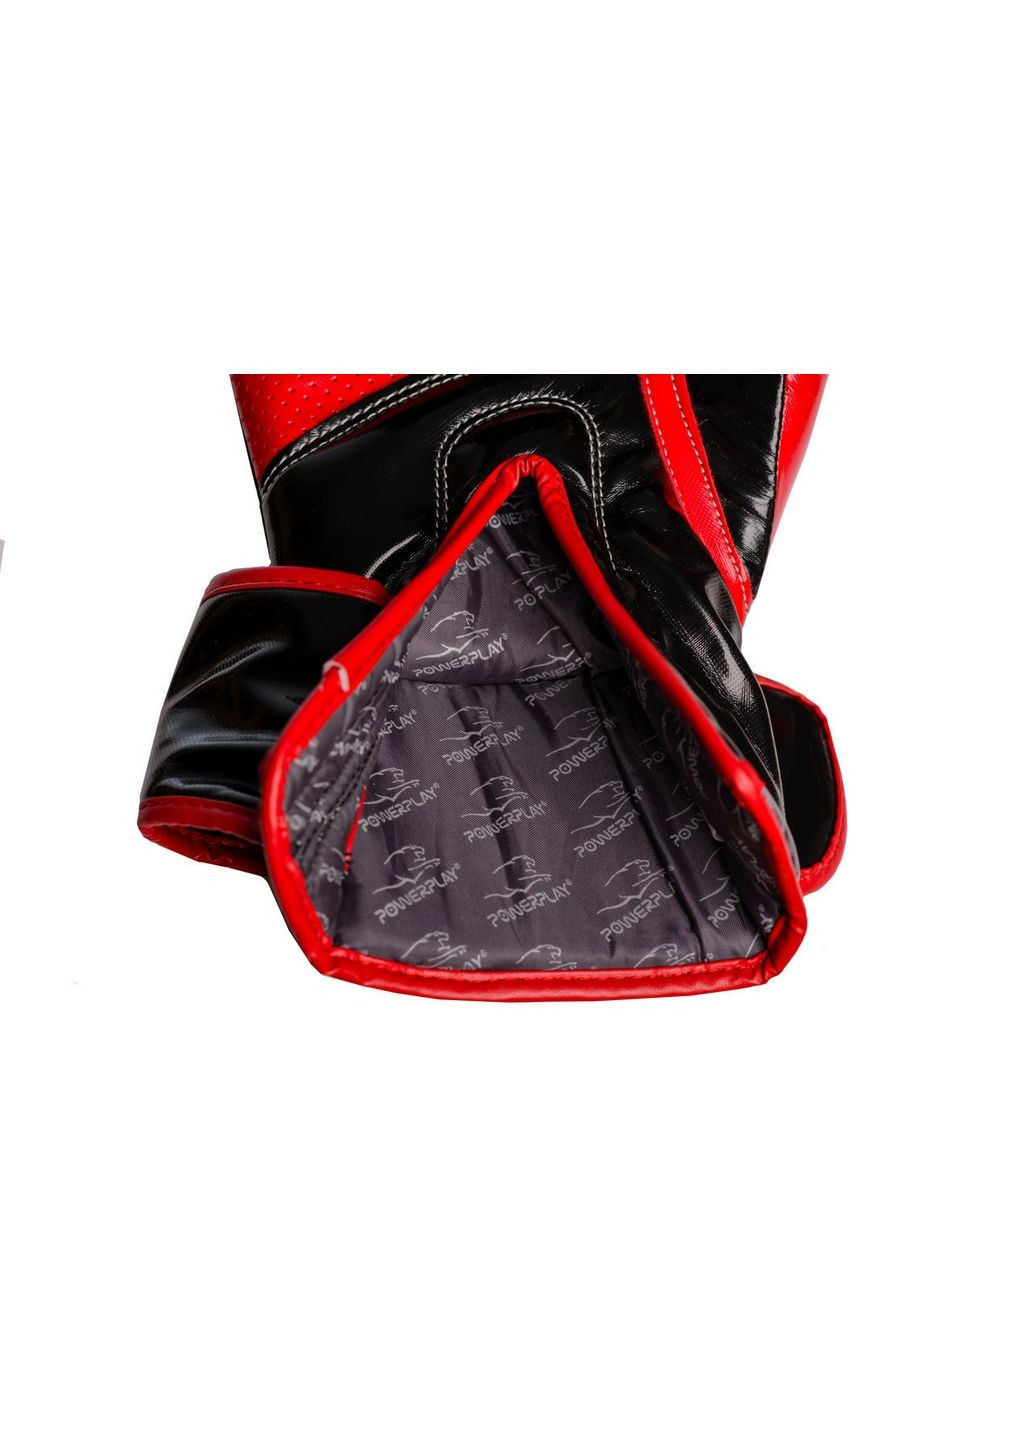 Боксерские перчатки PowerPlay (282587035)